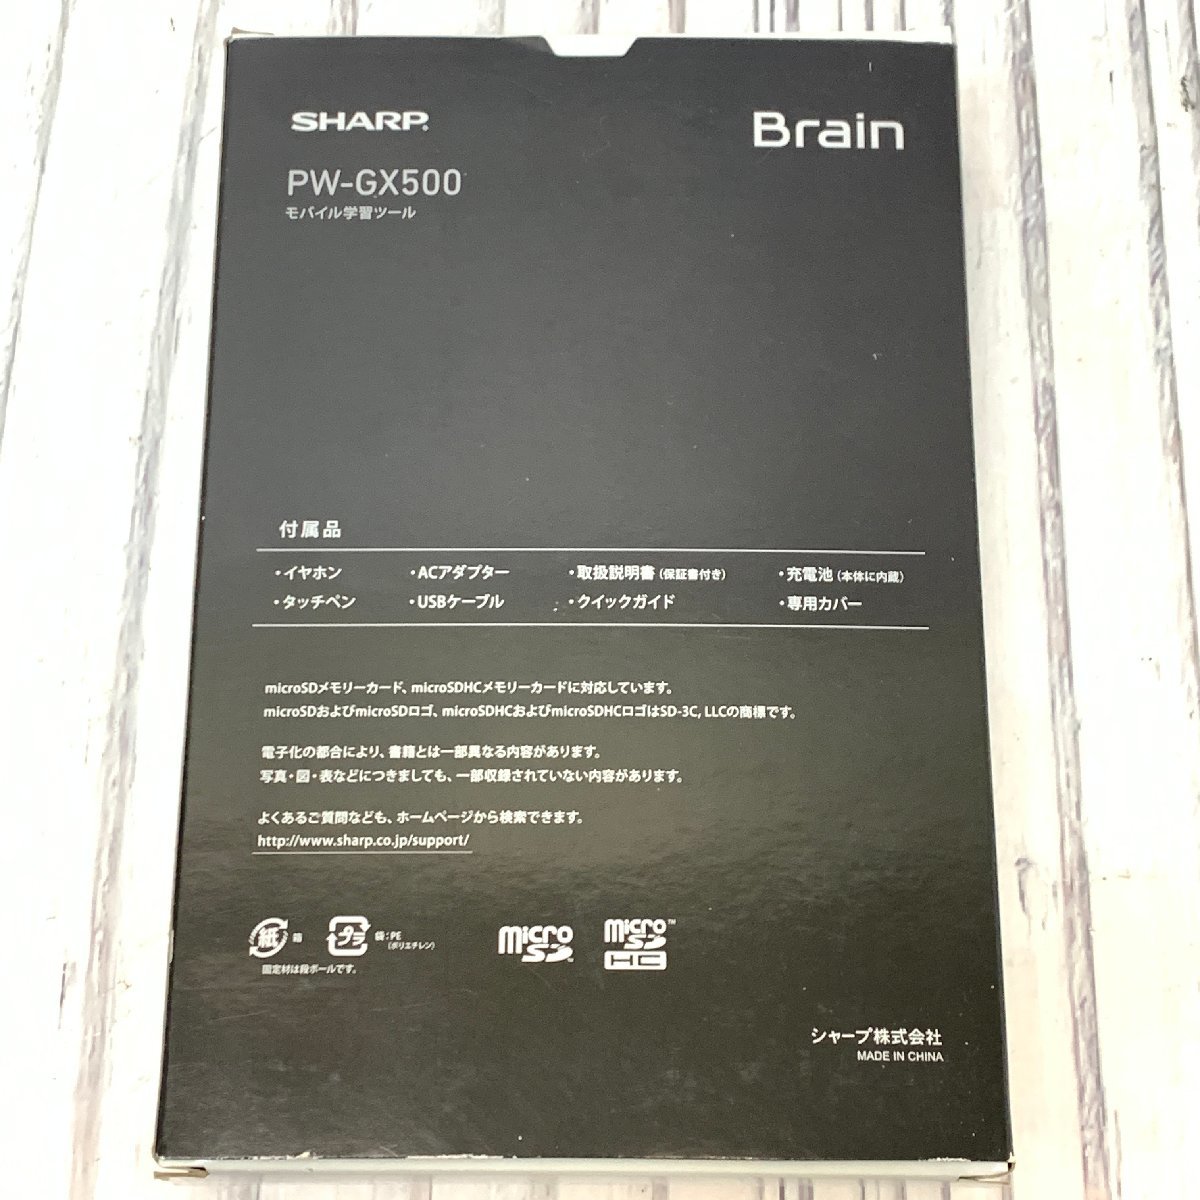 s001 A3.4 保管品 SHARP シャープ Brain ブレイン モバイル学習ツール PW-GX500 ケース付き ホワイト 受験など